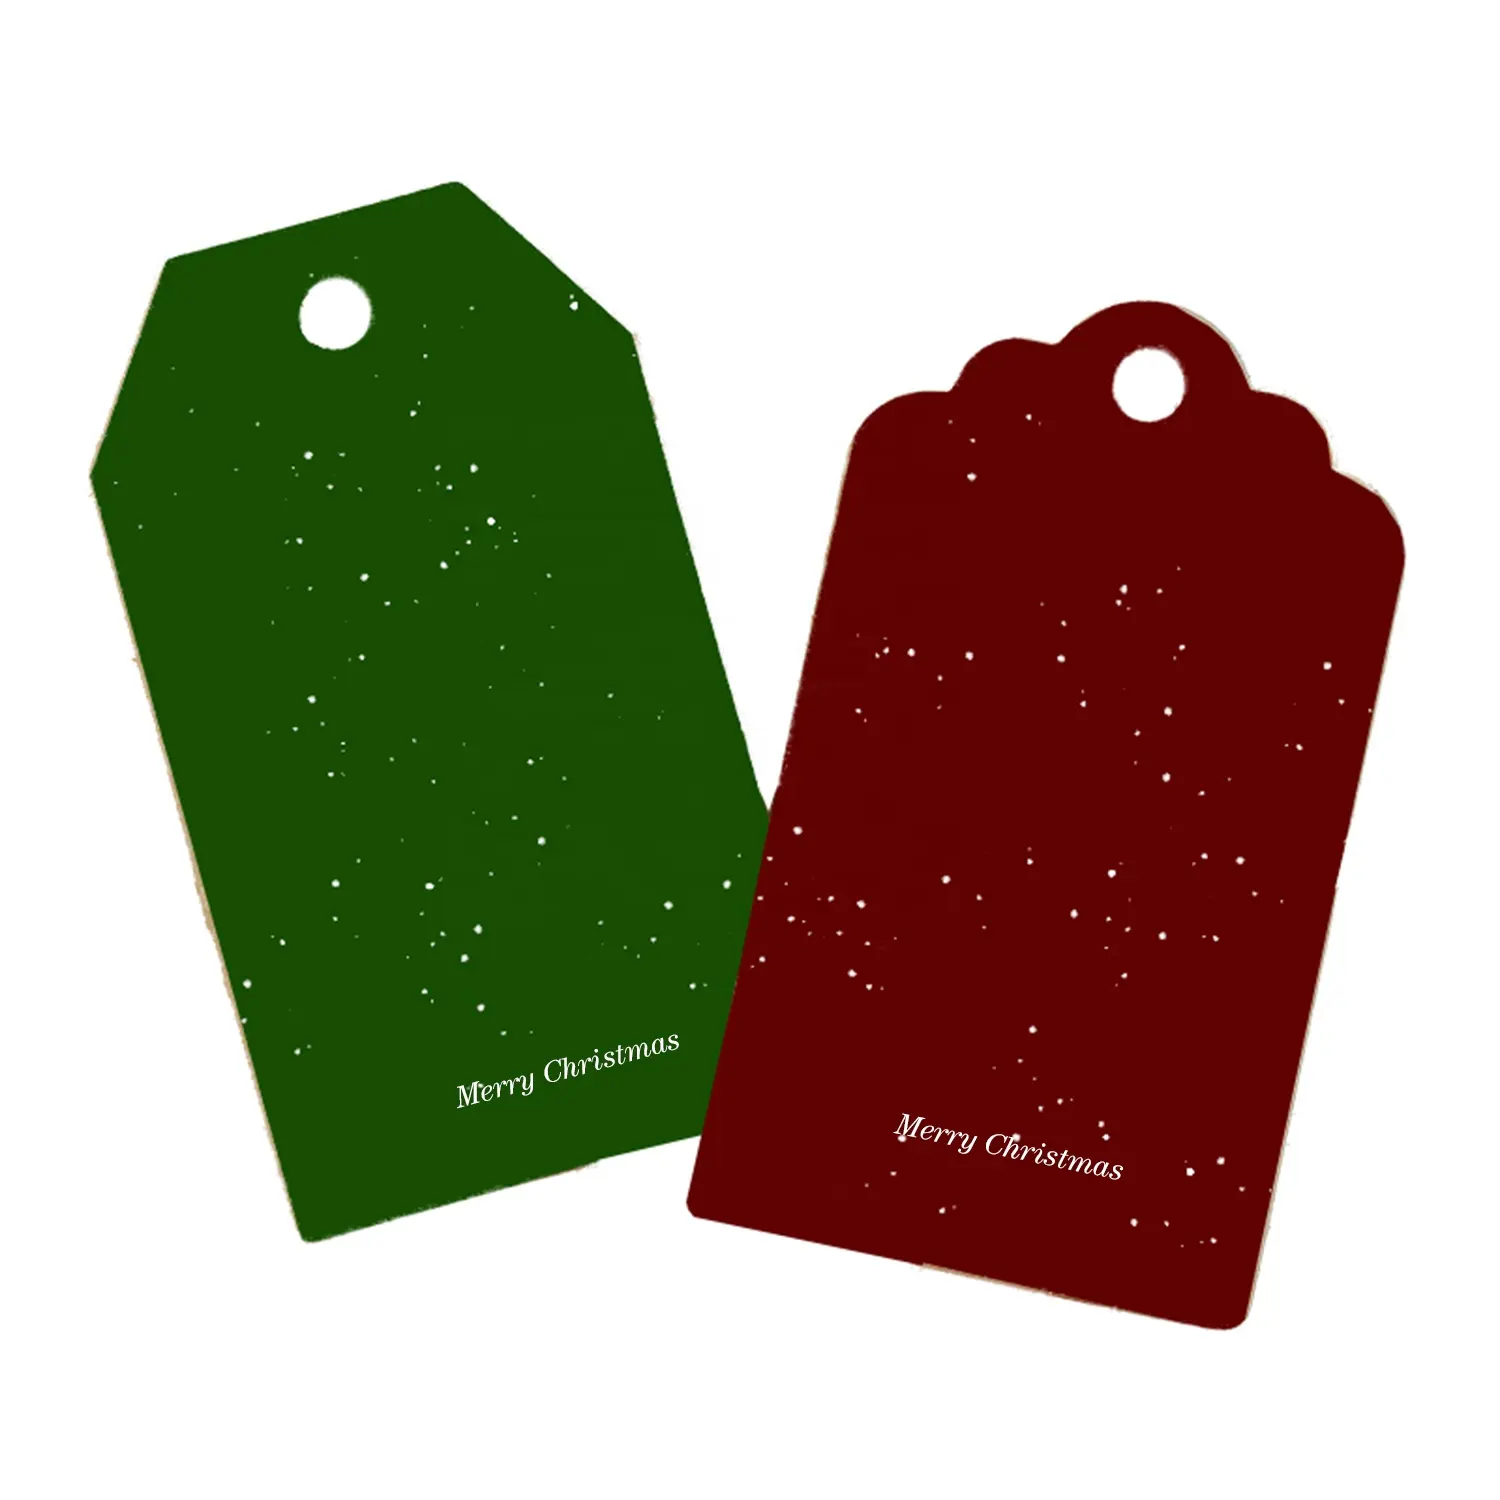 Noël créatif ascenseur bricolage arbre de noël décoration cadeau passe carte décorative personnalisable noël souhaitant carte de voeux